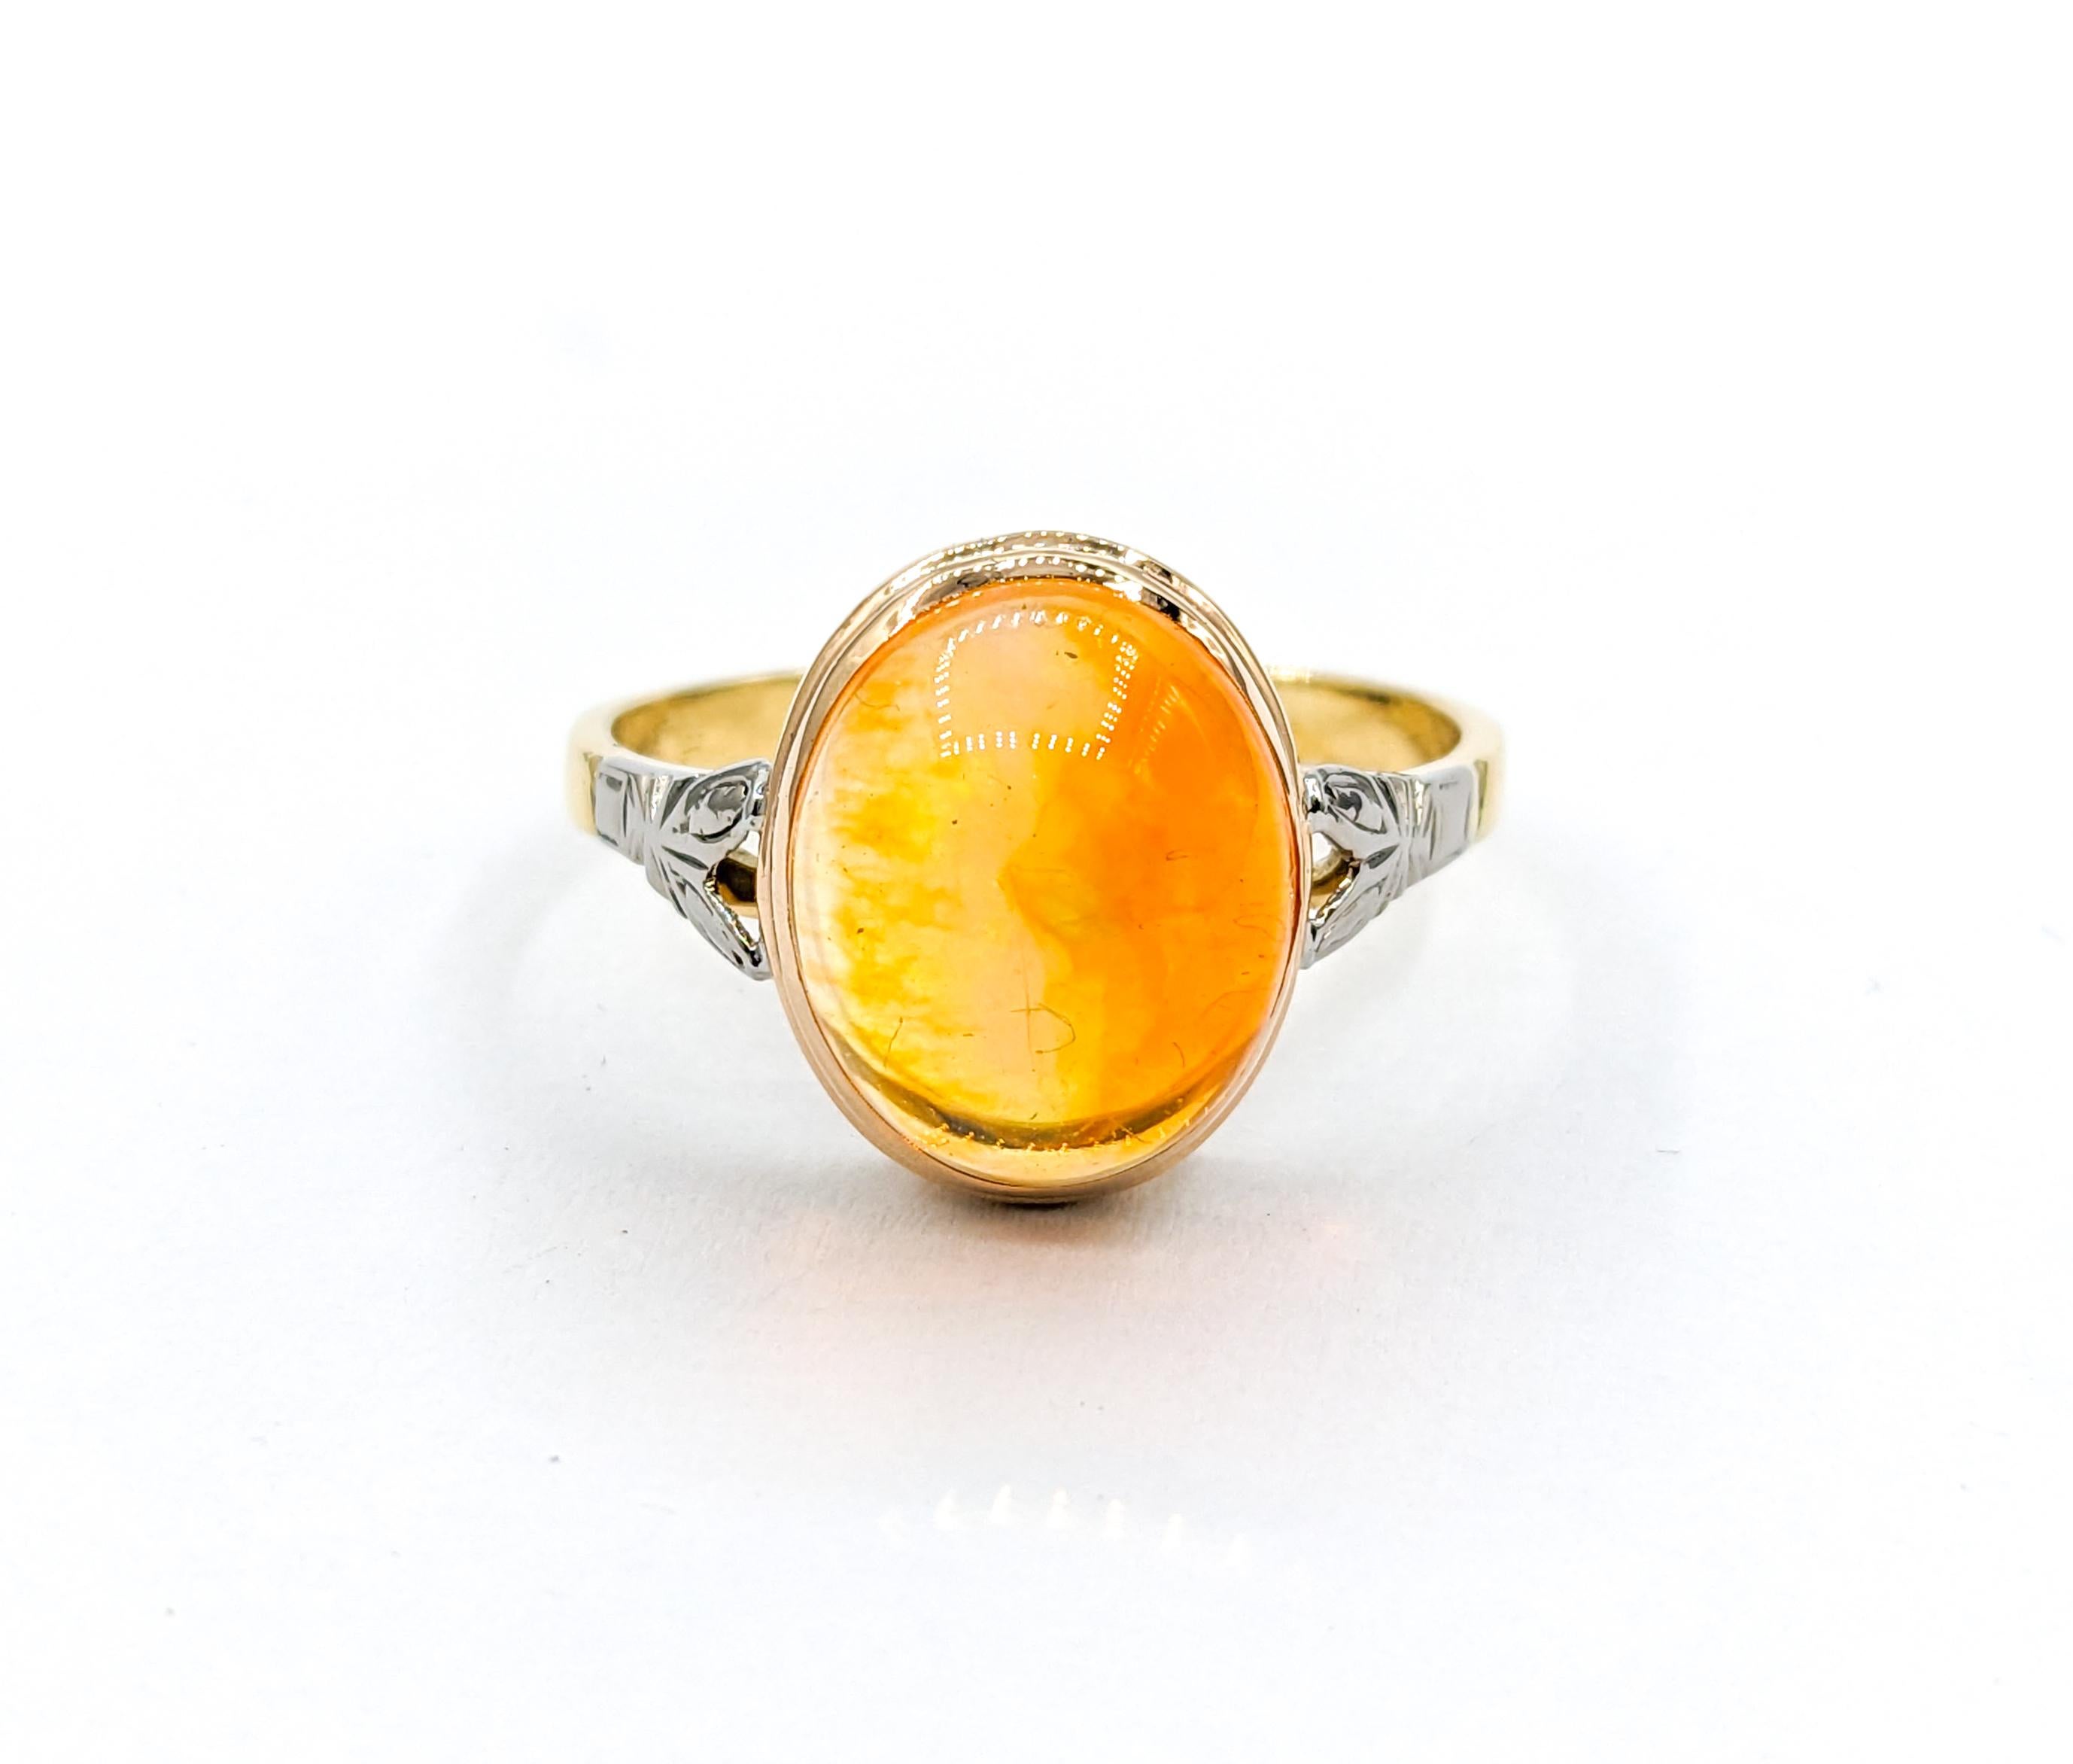 Cabochon Feuer Opal Ring in Gelbgold

Erleben Sie Eleganz mit unserem Vintage Ring, der sorgfältig aus 18-karätigem Gelbgold gefertigt ist. Dieses exquisite Stück zeigt einen atemberaubenden 12x10 mm großen Feueropal, der sich durch außergewöhnliche